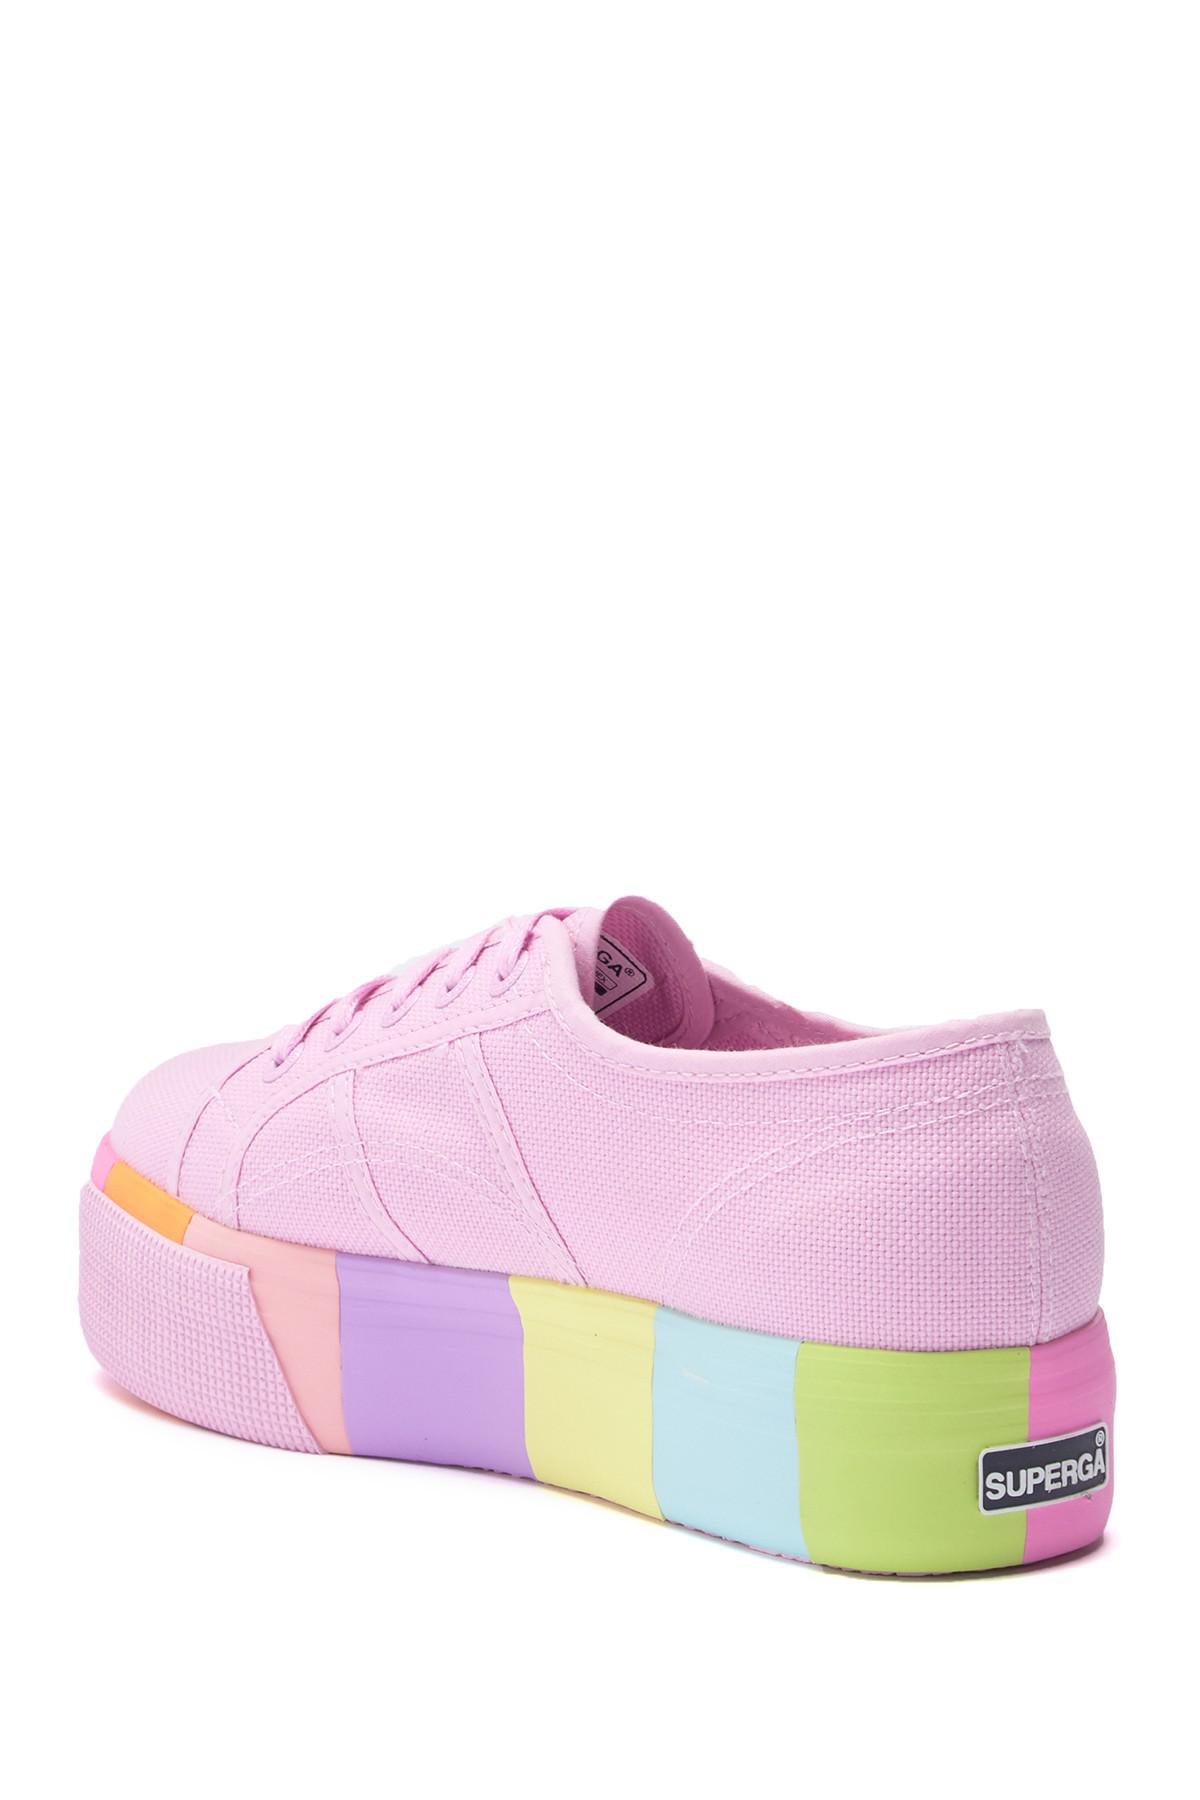 Superga 2790 Platform Color Block Sneaker in Pink Lyst